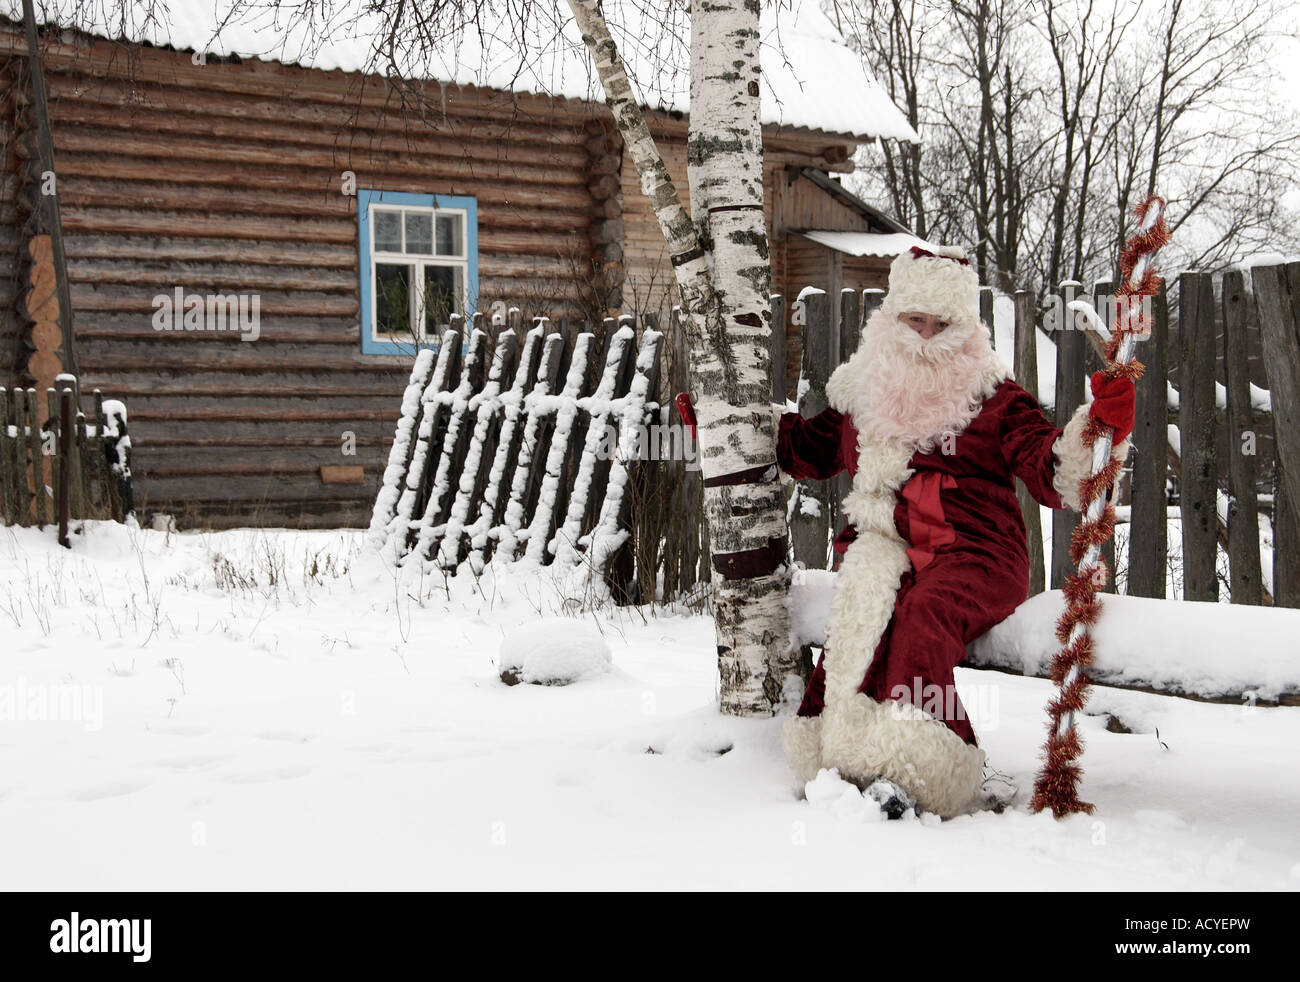 Vœux de Noël de Ded Moroz, dans la région de Leningrad, Russie Banque D'Images